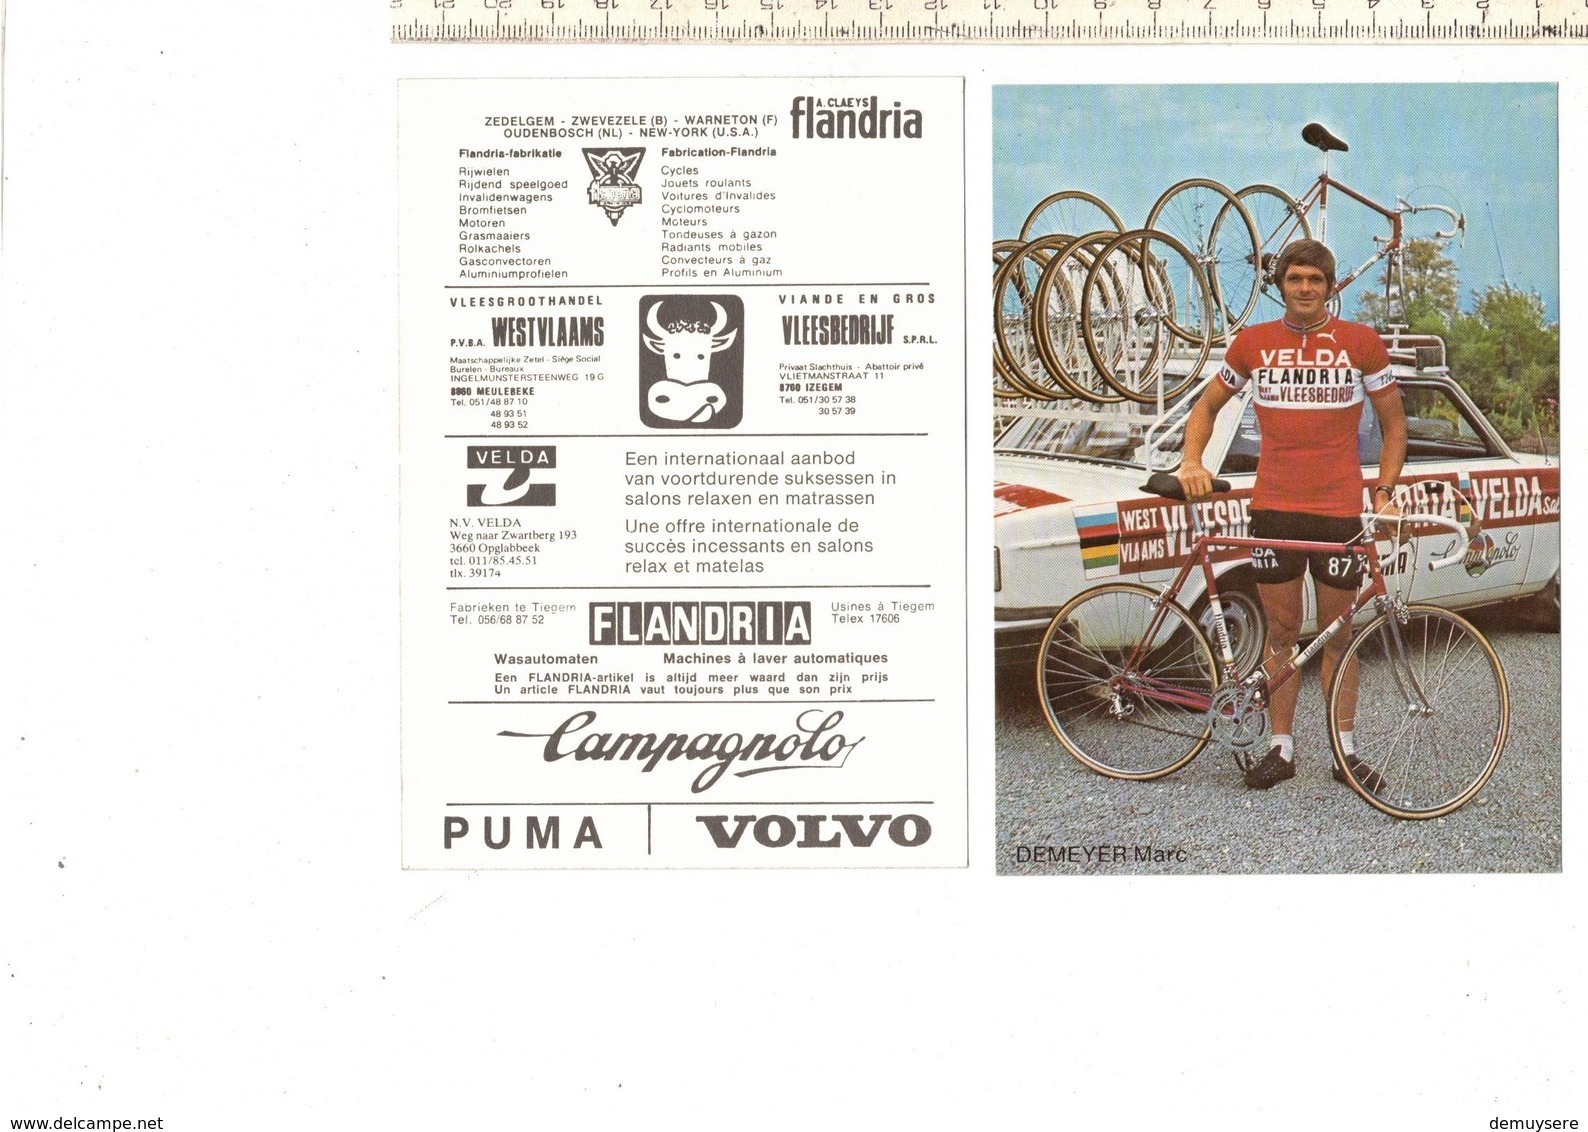 639 - CYCLISME - WIELRENNEN - DEMEYER MARC - FLANDRIA - Cyclisme